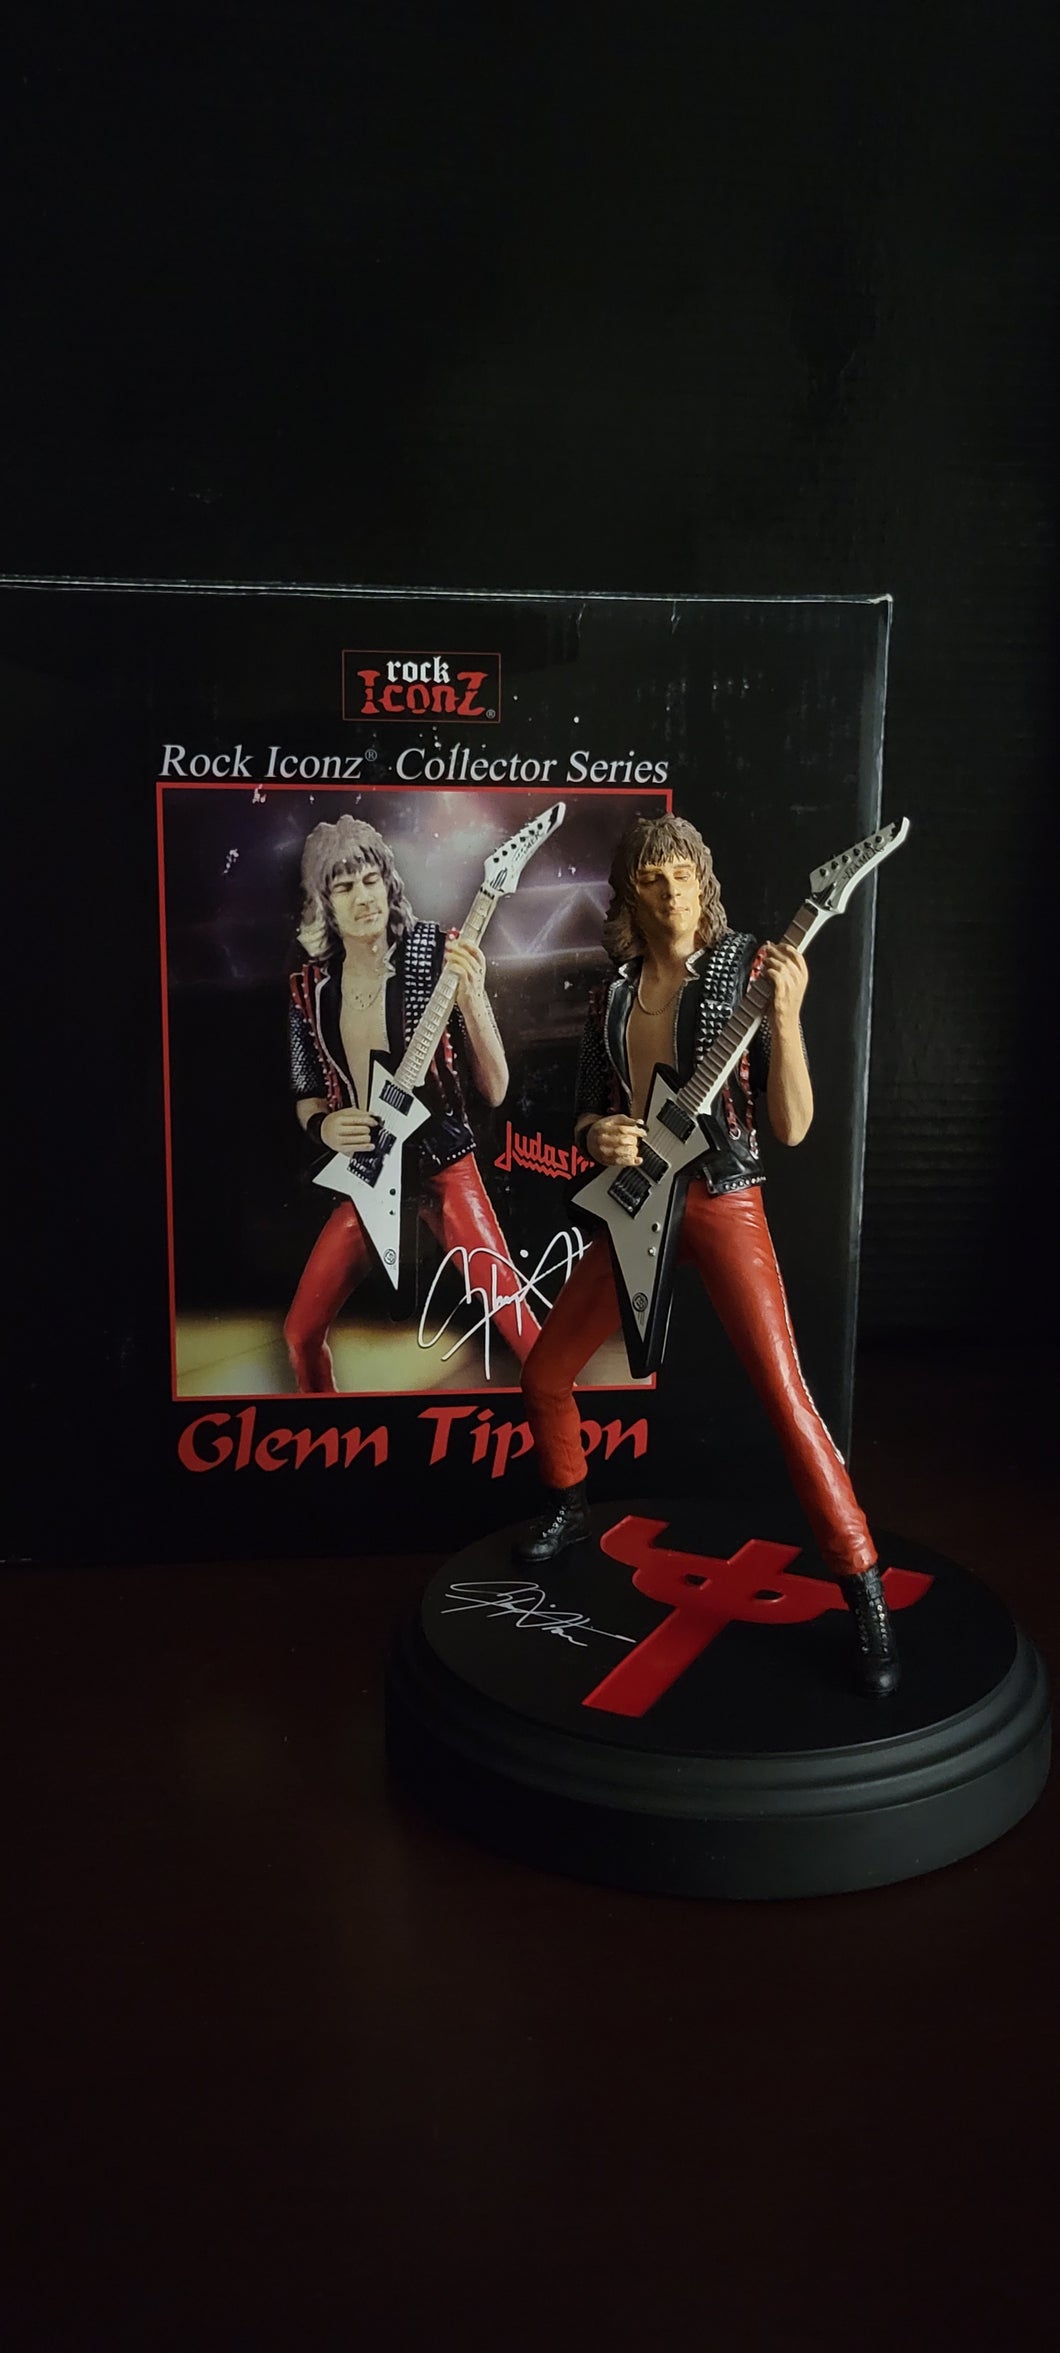 Judas Priest-Glenn Tipton 2008 Knucklebonz Rock Iconz